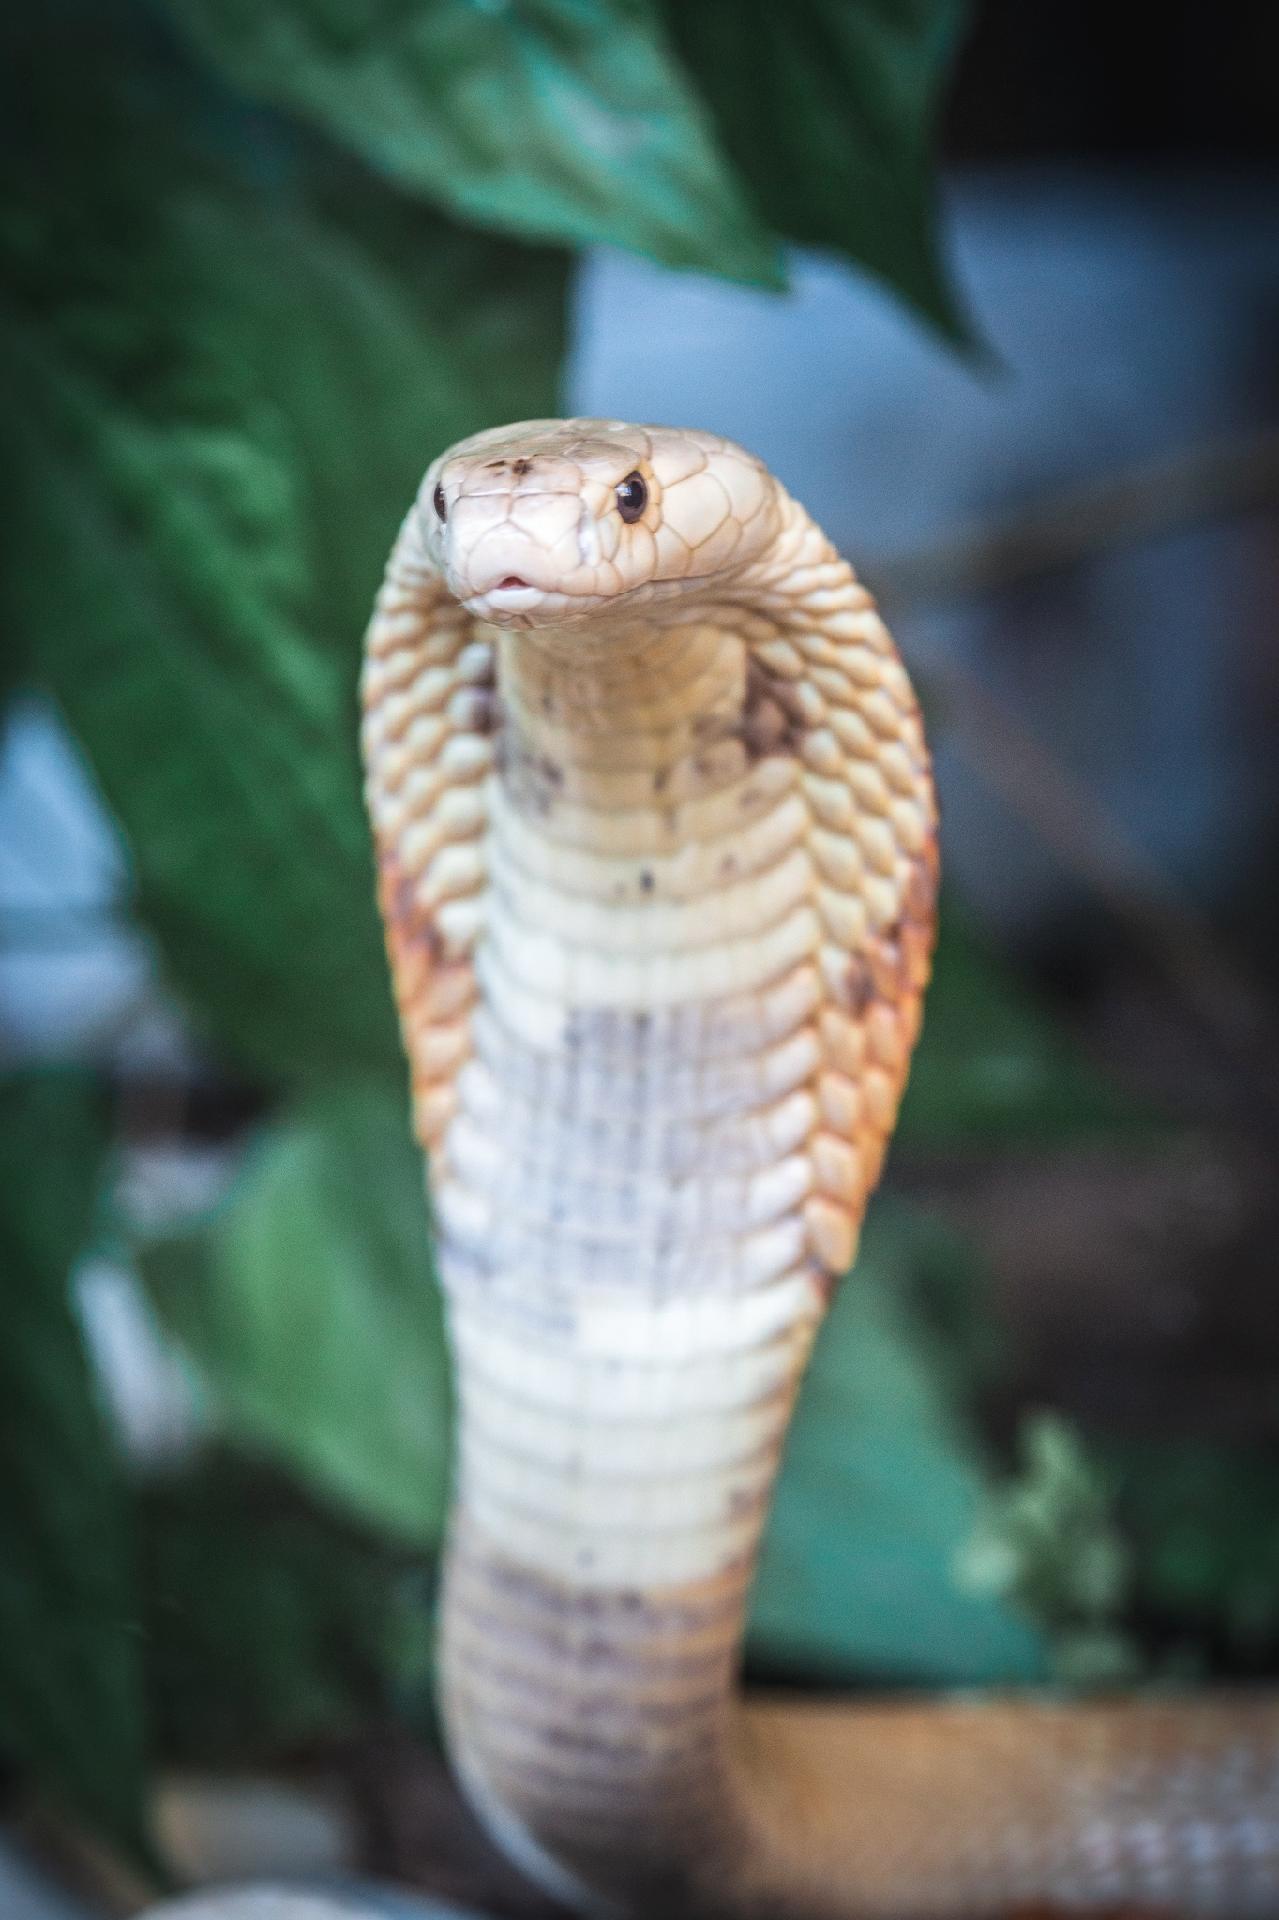 Criar cobra sem ter o soro é roleta russa, diz pesquisadora do Butantan -  15/07/2020 - UOL ECOA